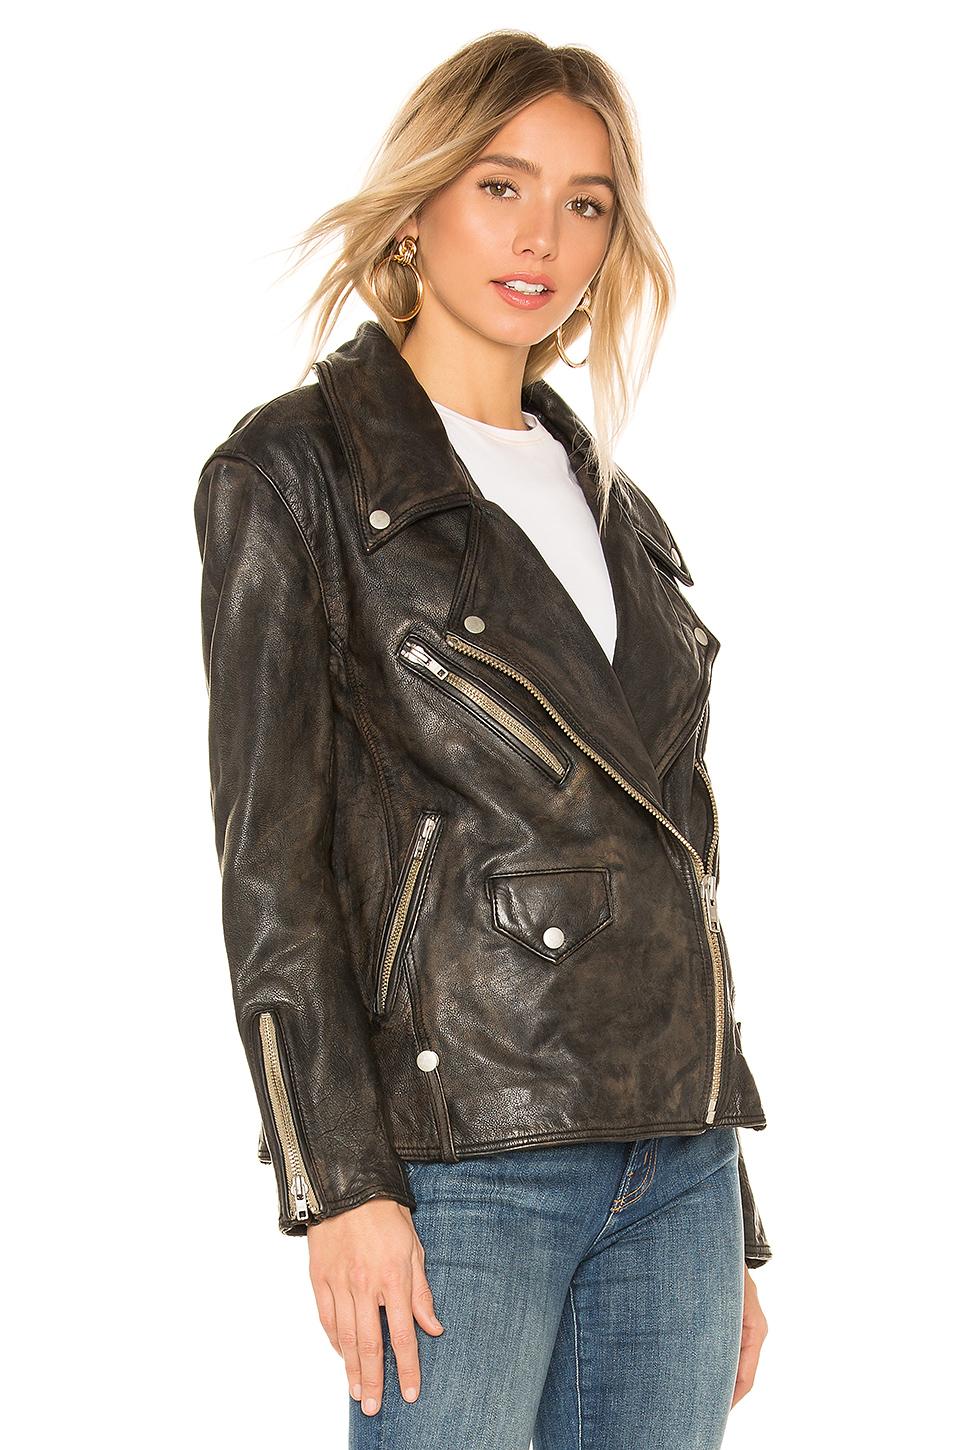 Free People Jealousy Leather Moto Jacket in Black - Lyst